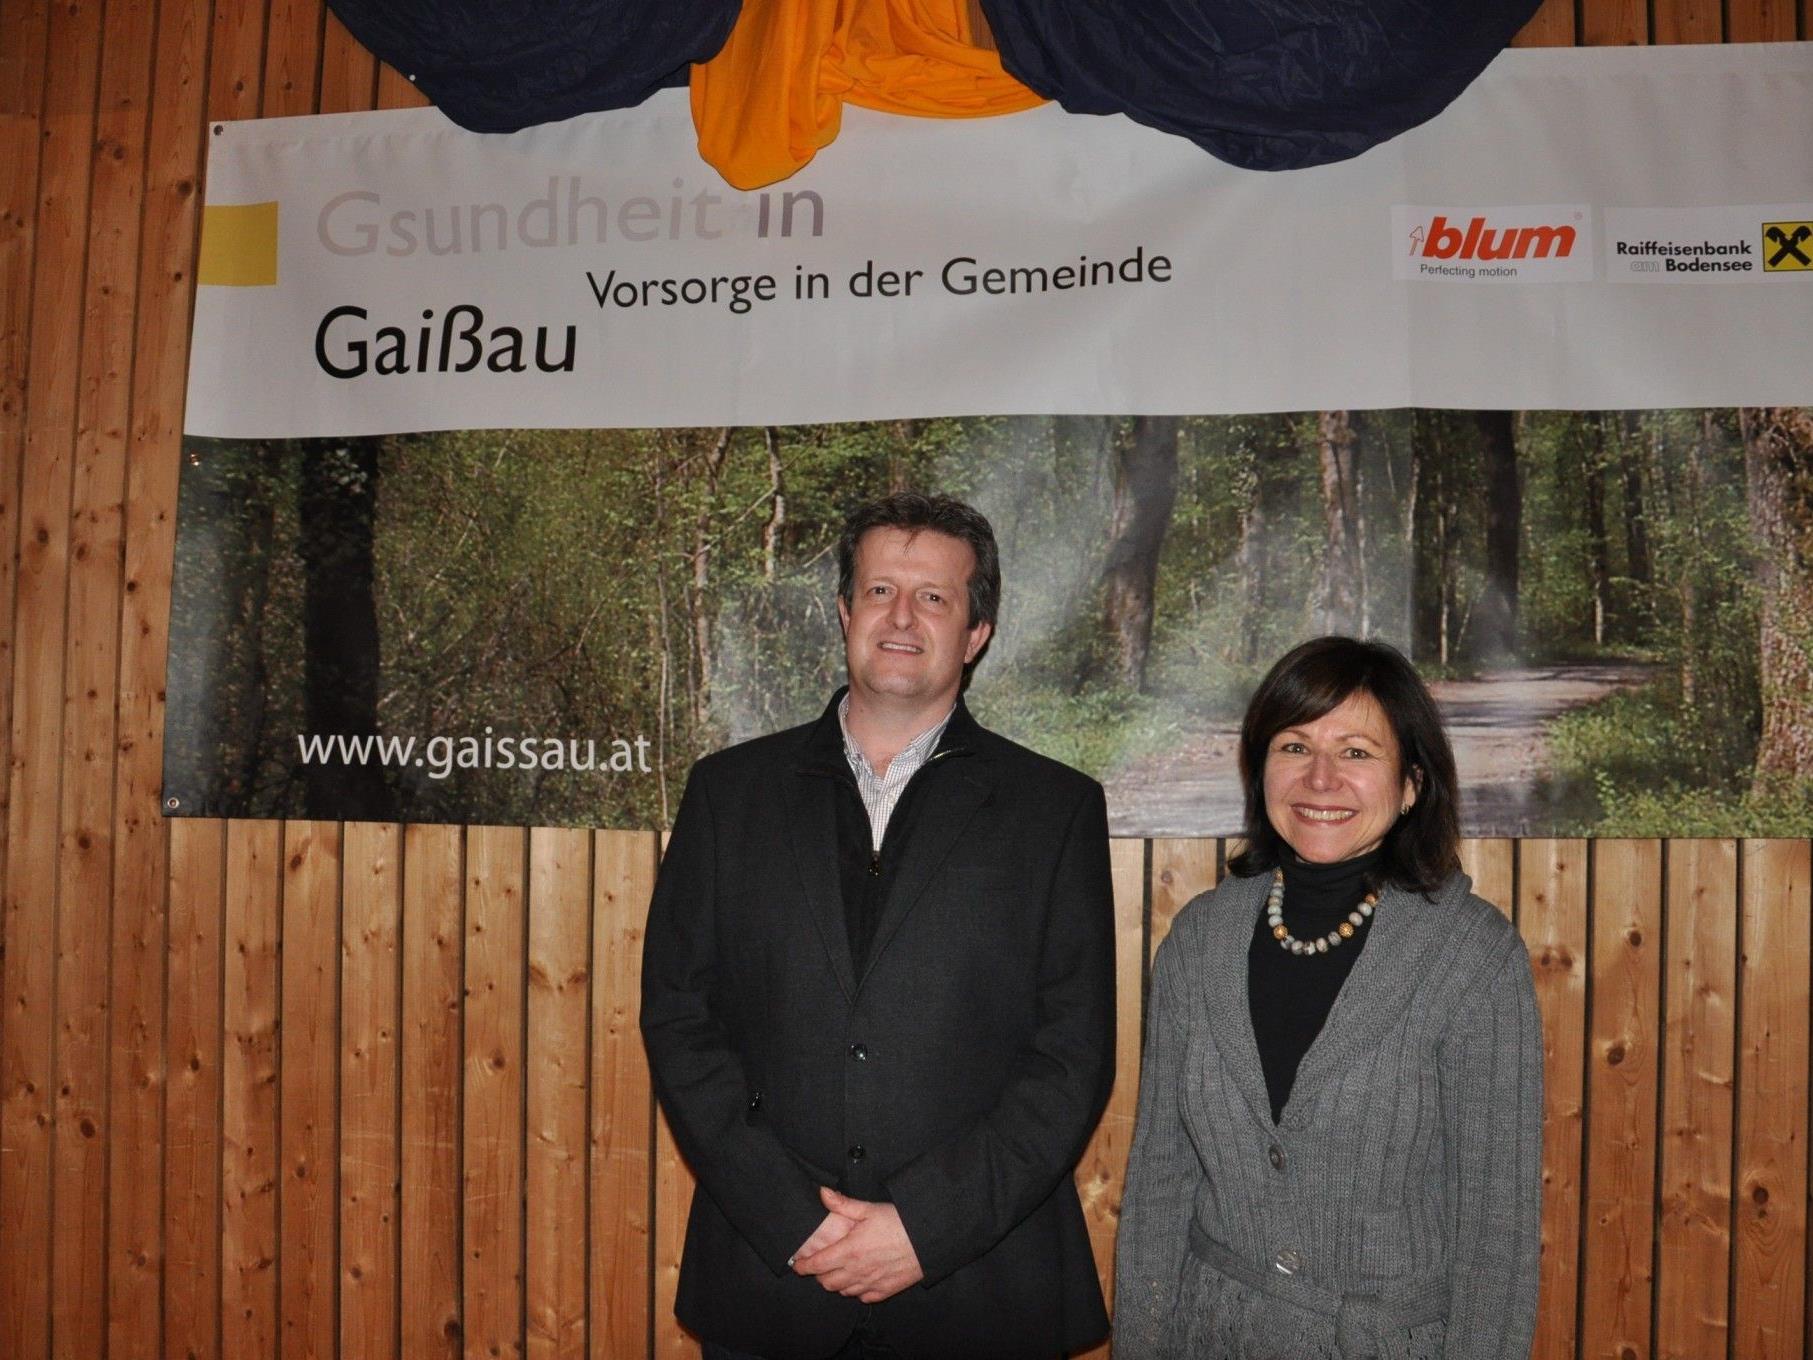 Vortragsreihe "Gsundheit in Gaißau" wurde von Judith Lutz vom Sozialzirkel Gaißau organisiert